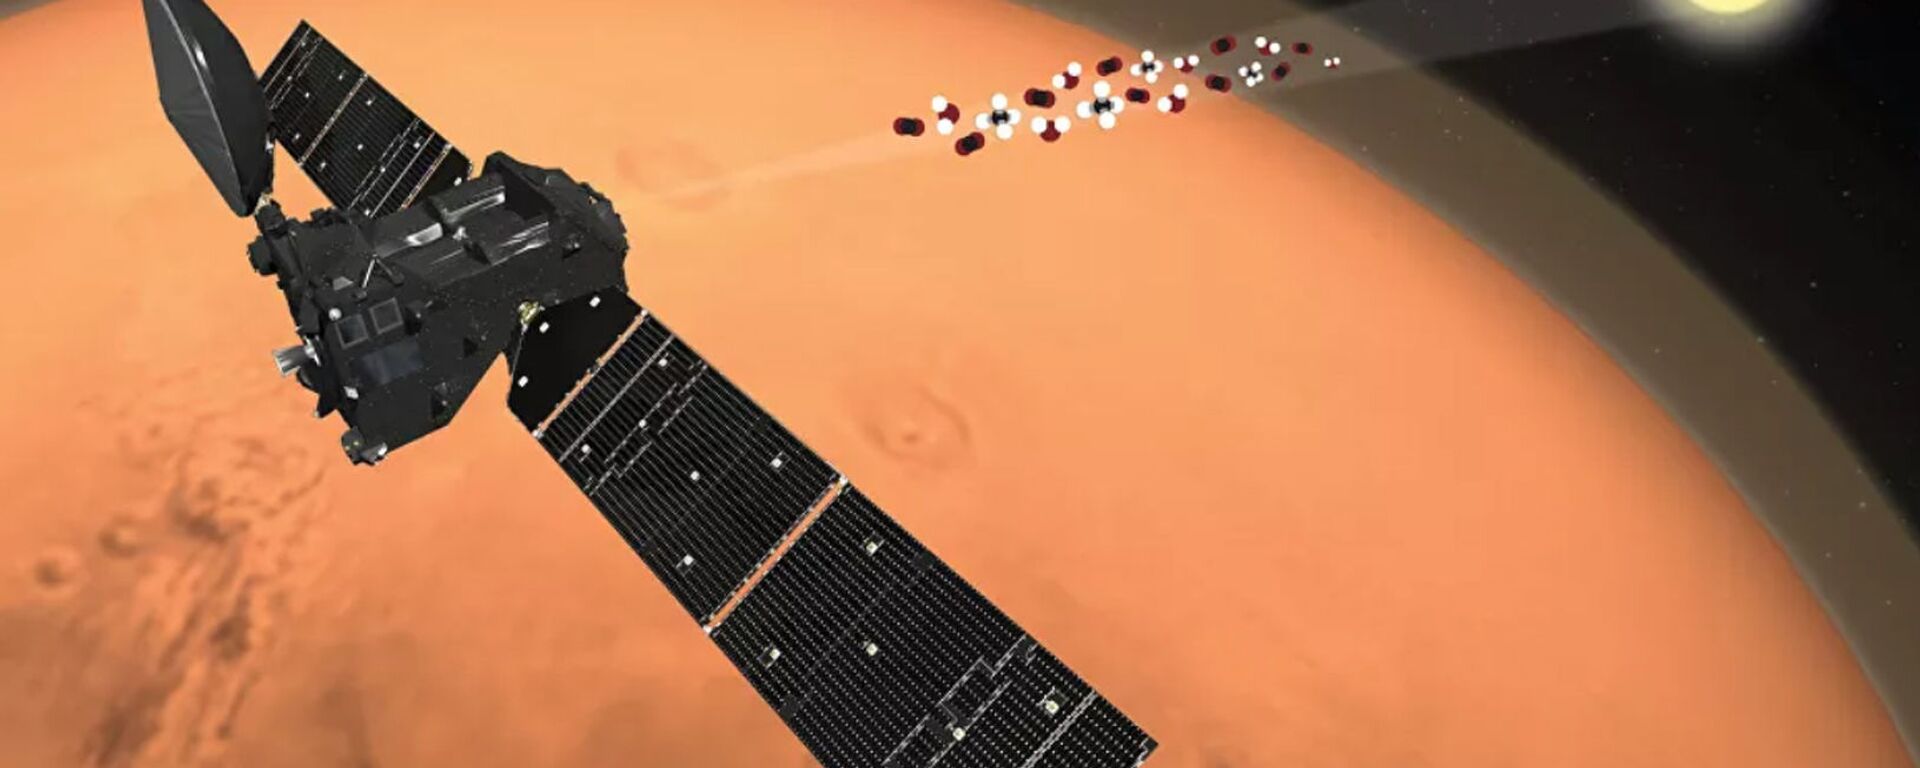 Зонд ЭкзоМарс-TGO исследует атмосферу Марса на просвет во время солнечных затмений - Sputnik Lietuva, 1920, 22.04.2021